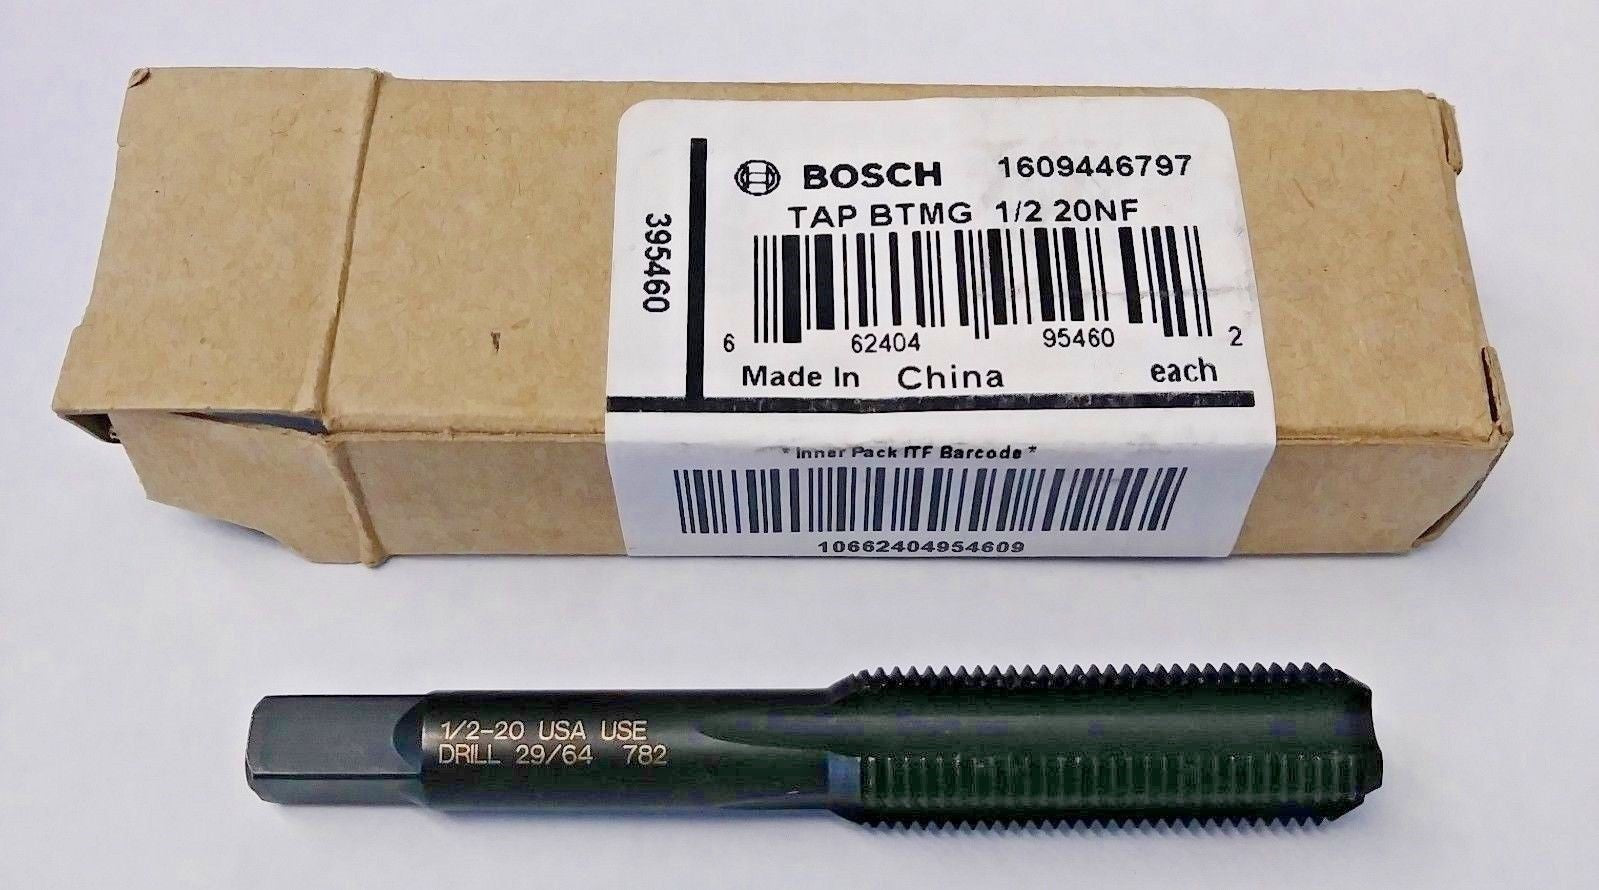 Bosch 1609446797 1/2 20NF Tap BTMG 395460